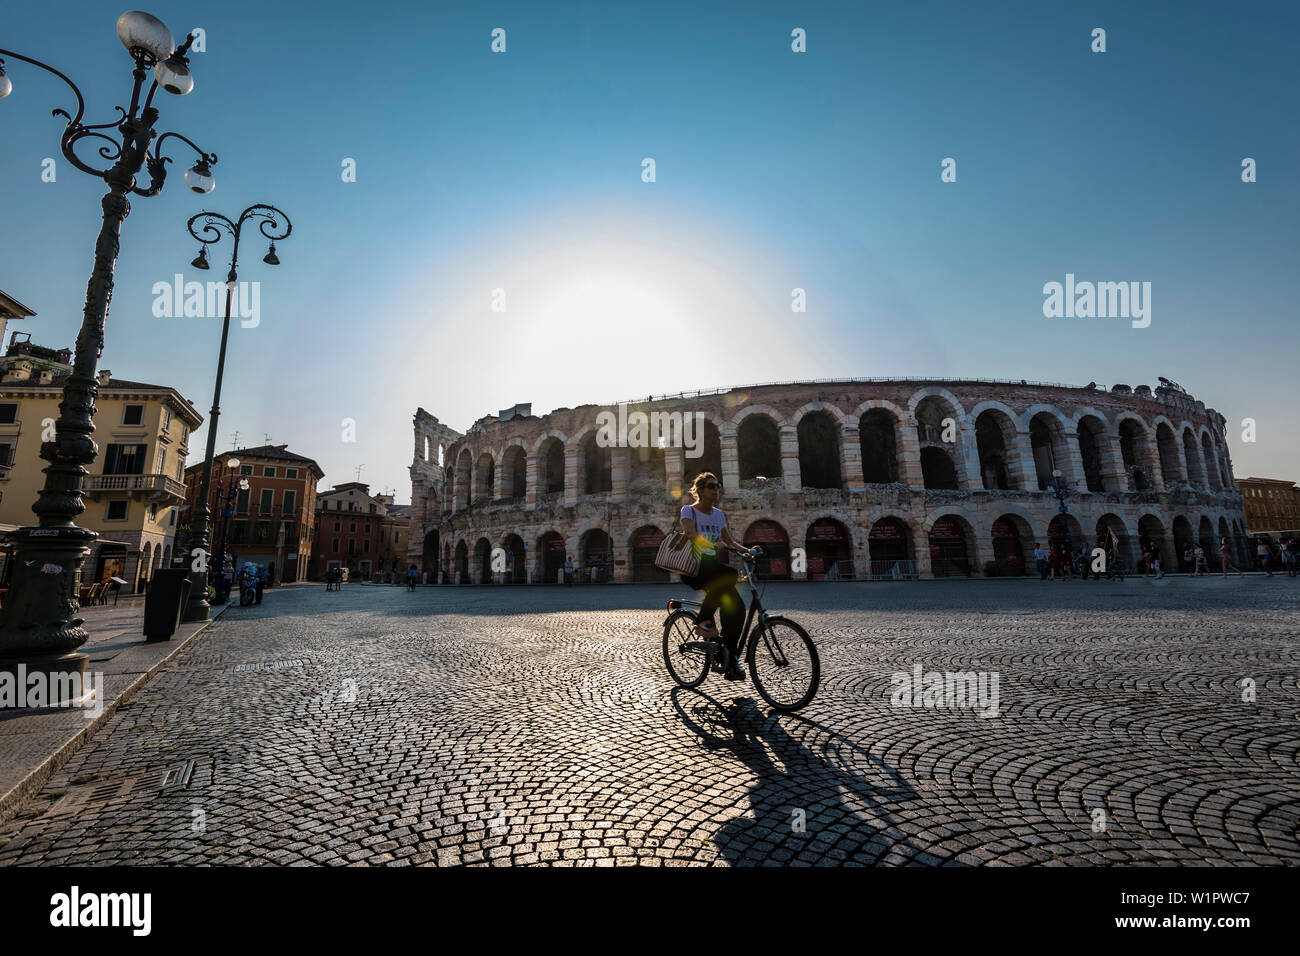 Arena, Piazza Bra, Verona, Venetien, Italien Stock Photo